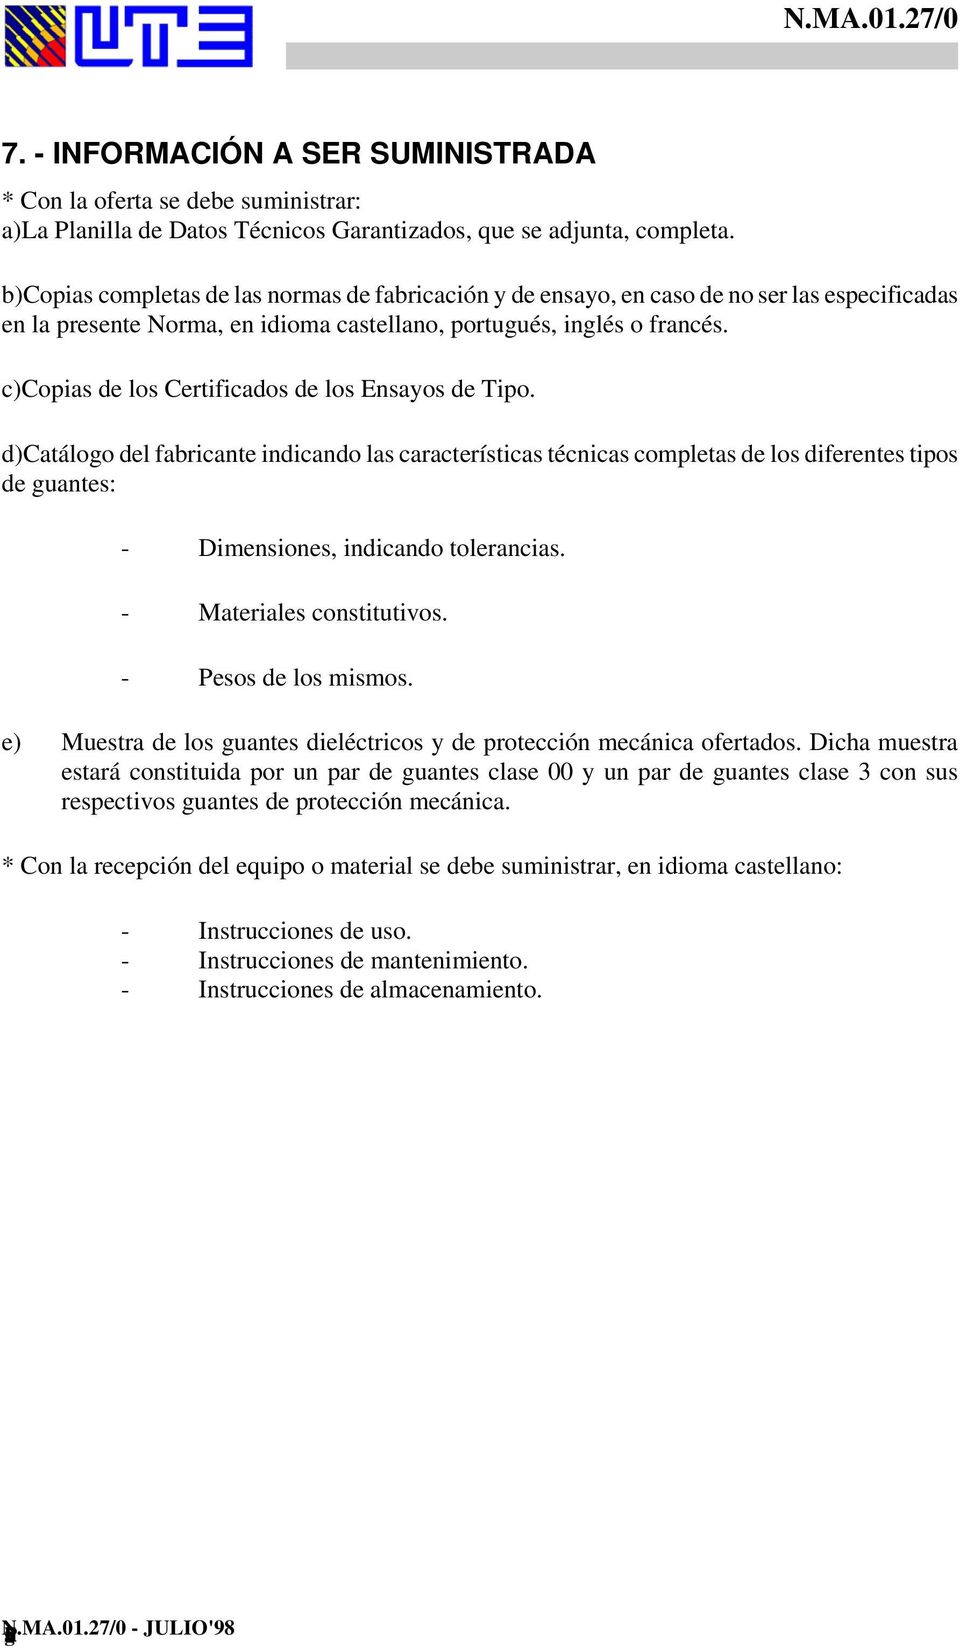 c) Copias de los Certificados de los Ensayos de Tipo.